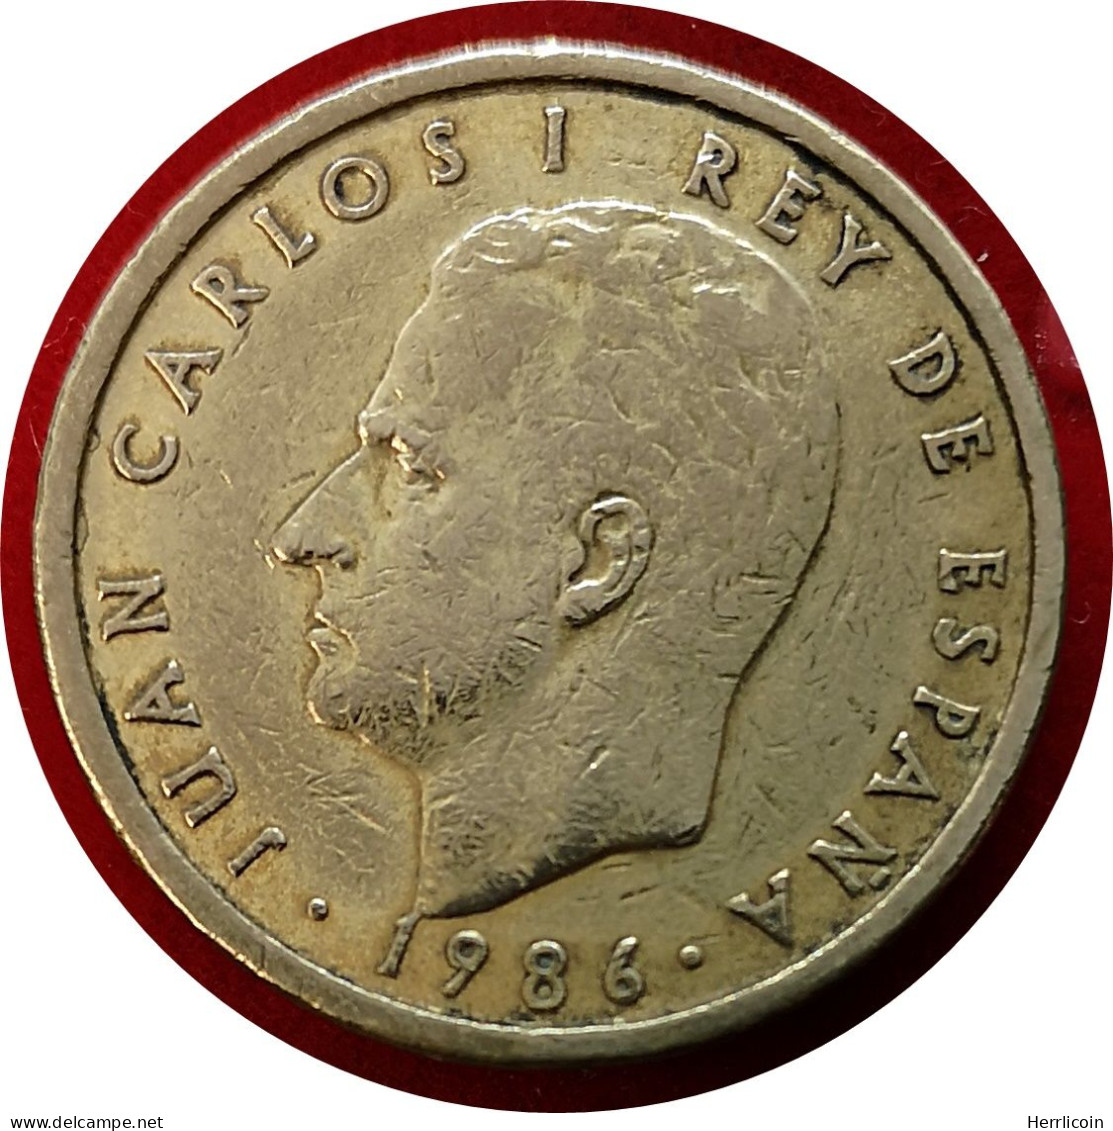 Monnaie Espagne - 1986 - 100 Pesetas Modéle CIEN (Tranche B) - 5 Pesetas